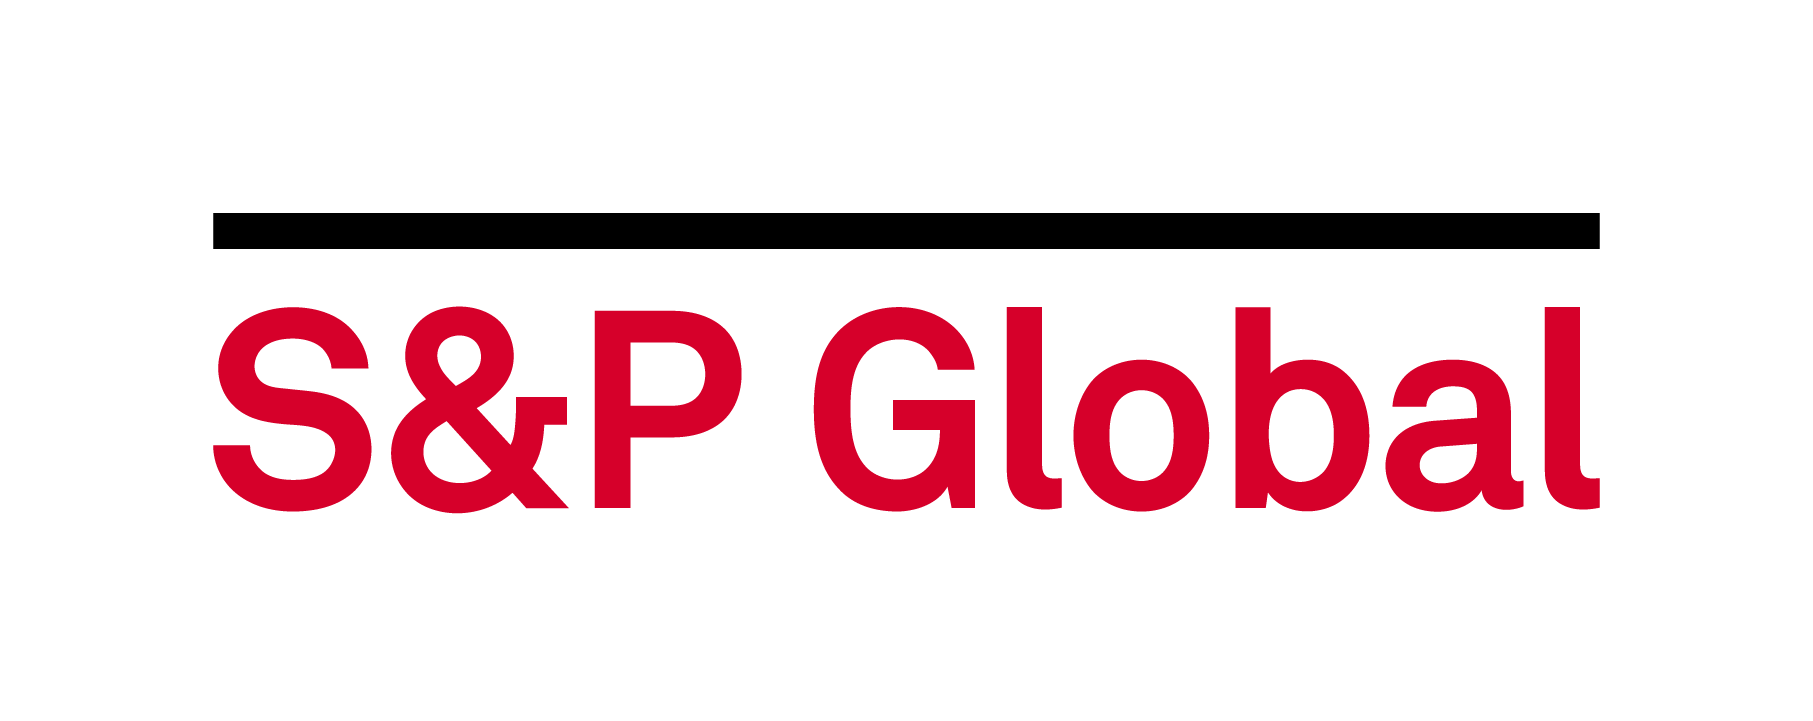 P s bank. S&P Global. S&P логотип. Standard poor's логотип. S P 500 лого.